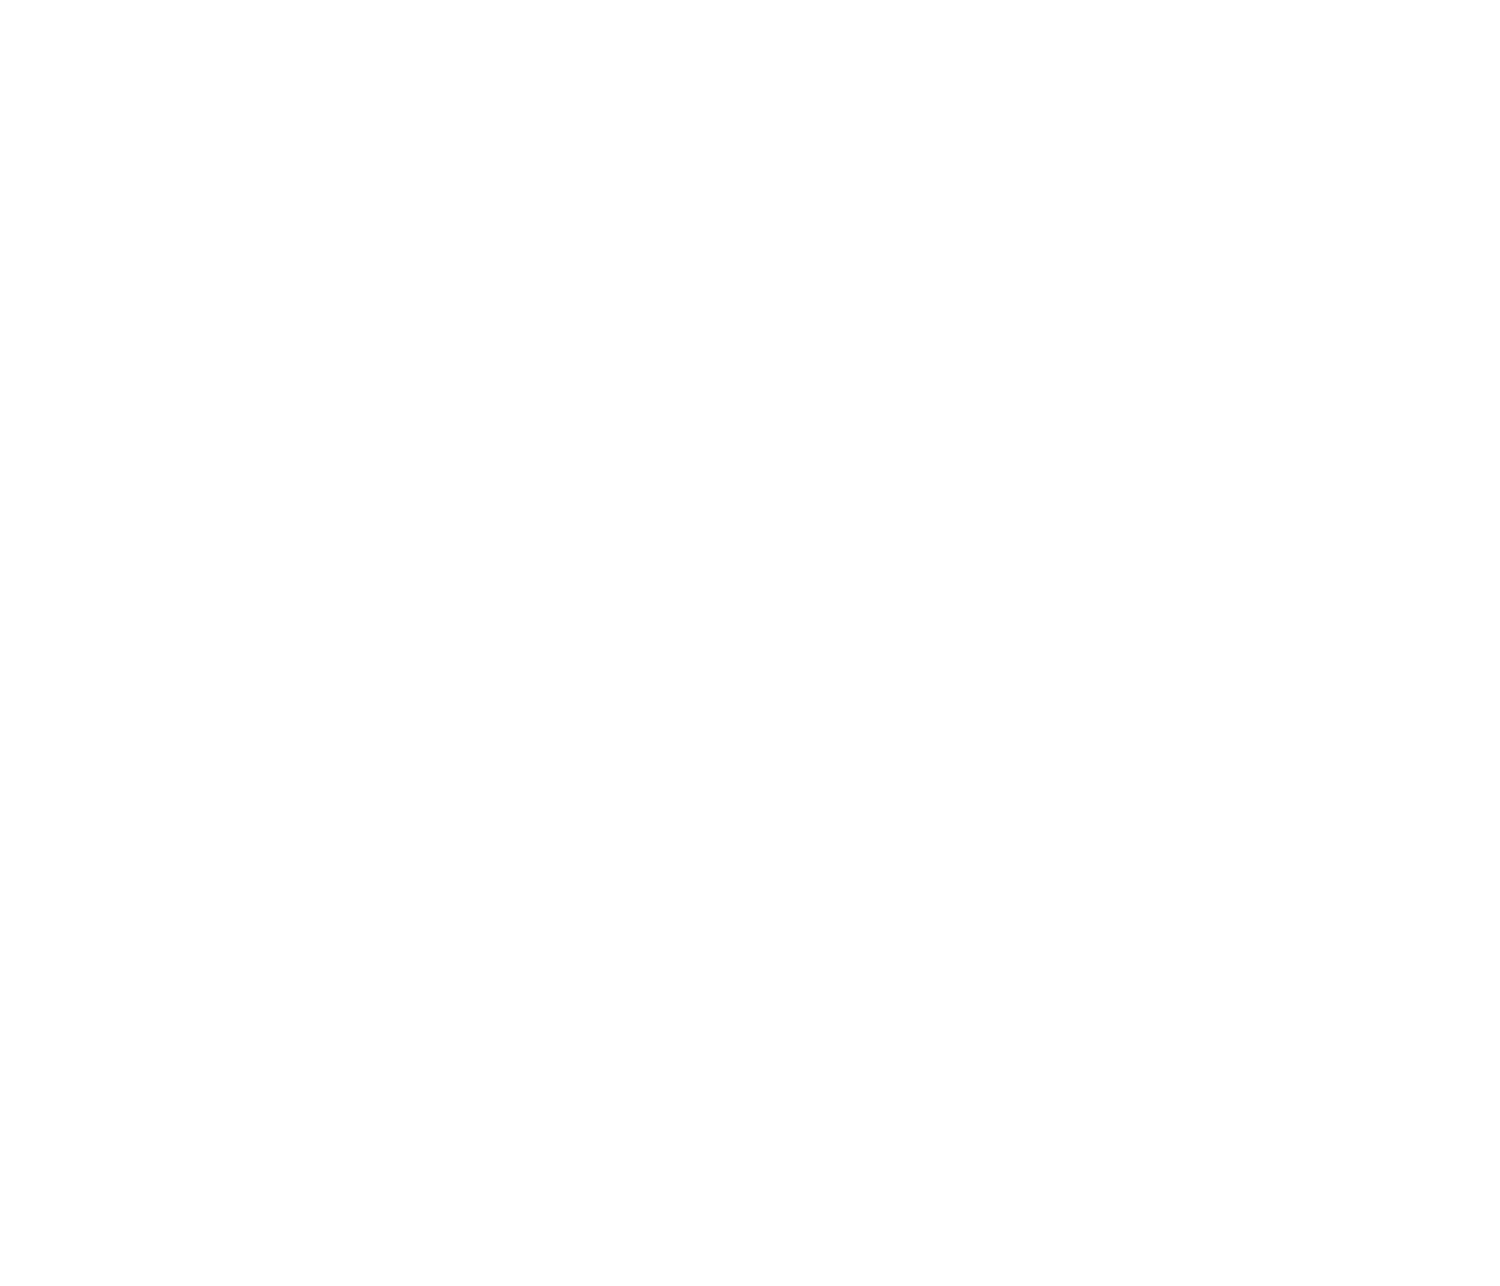 DALE, HUTTO &amp; LYLE, PLLC